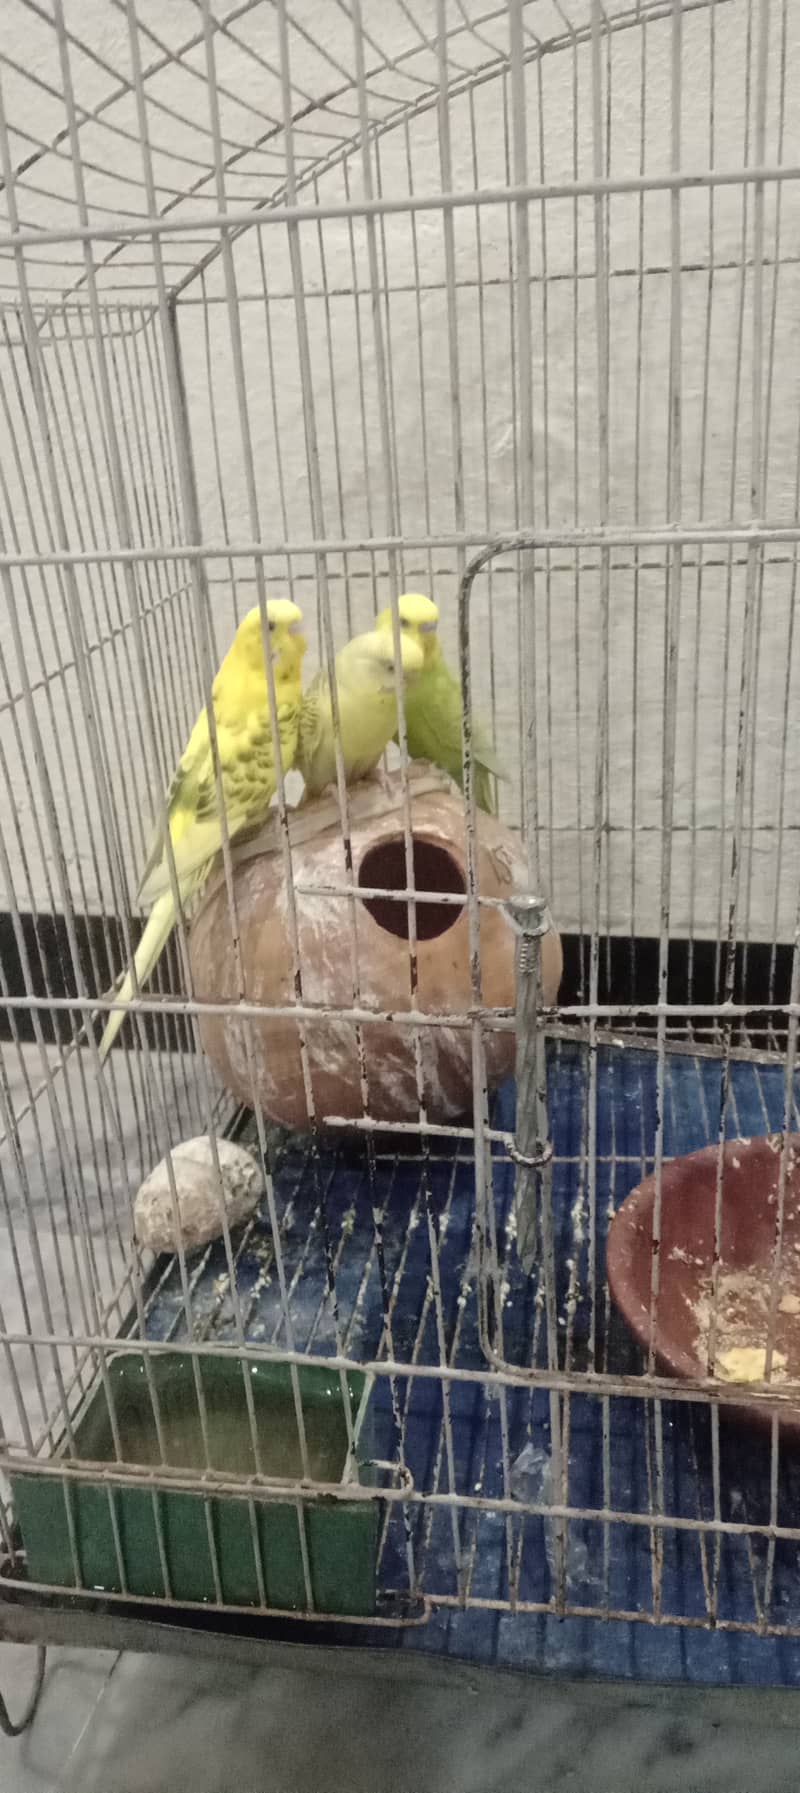 3 parrots 5